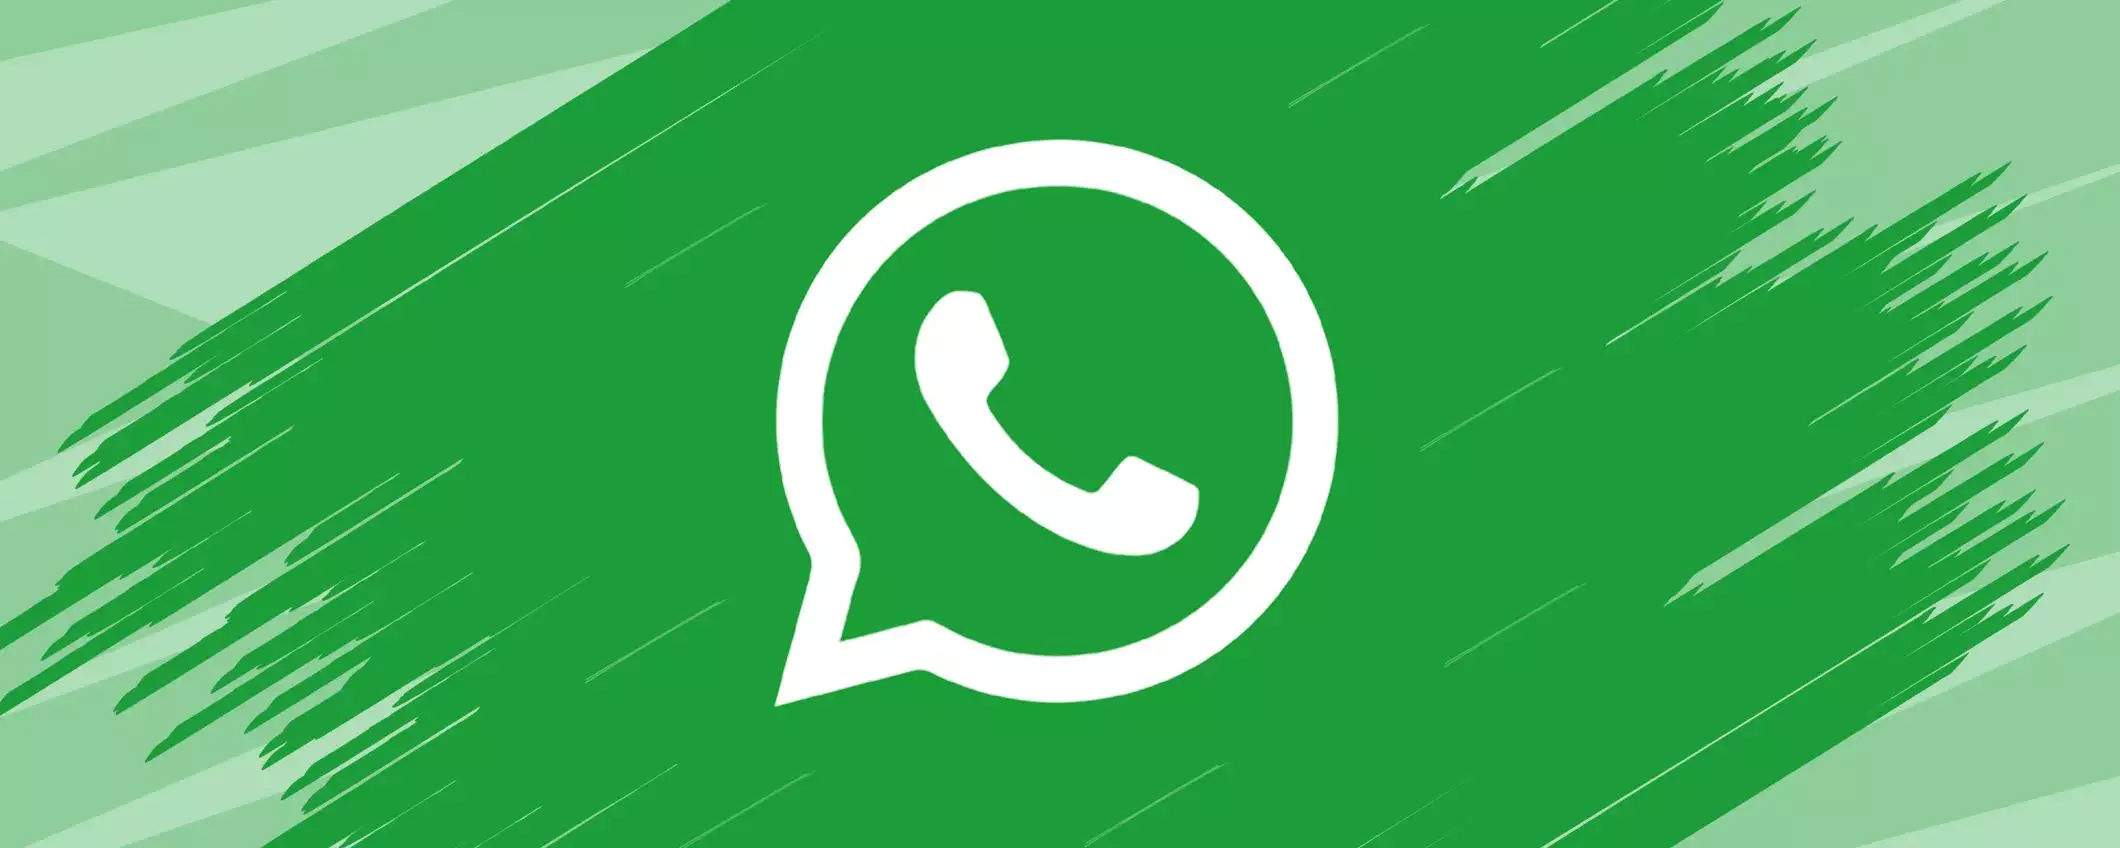 WhatsApp: un pulsante per avviare le chat AI